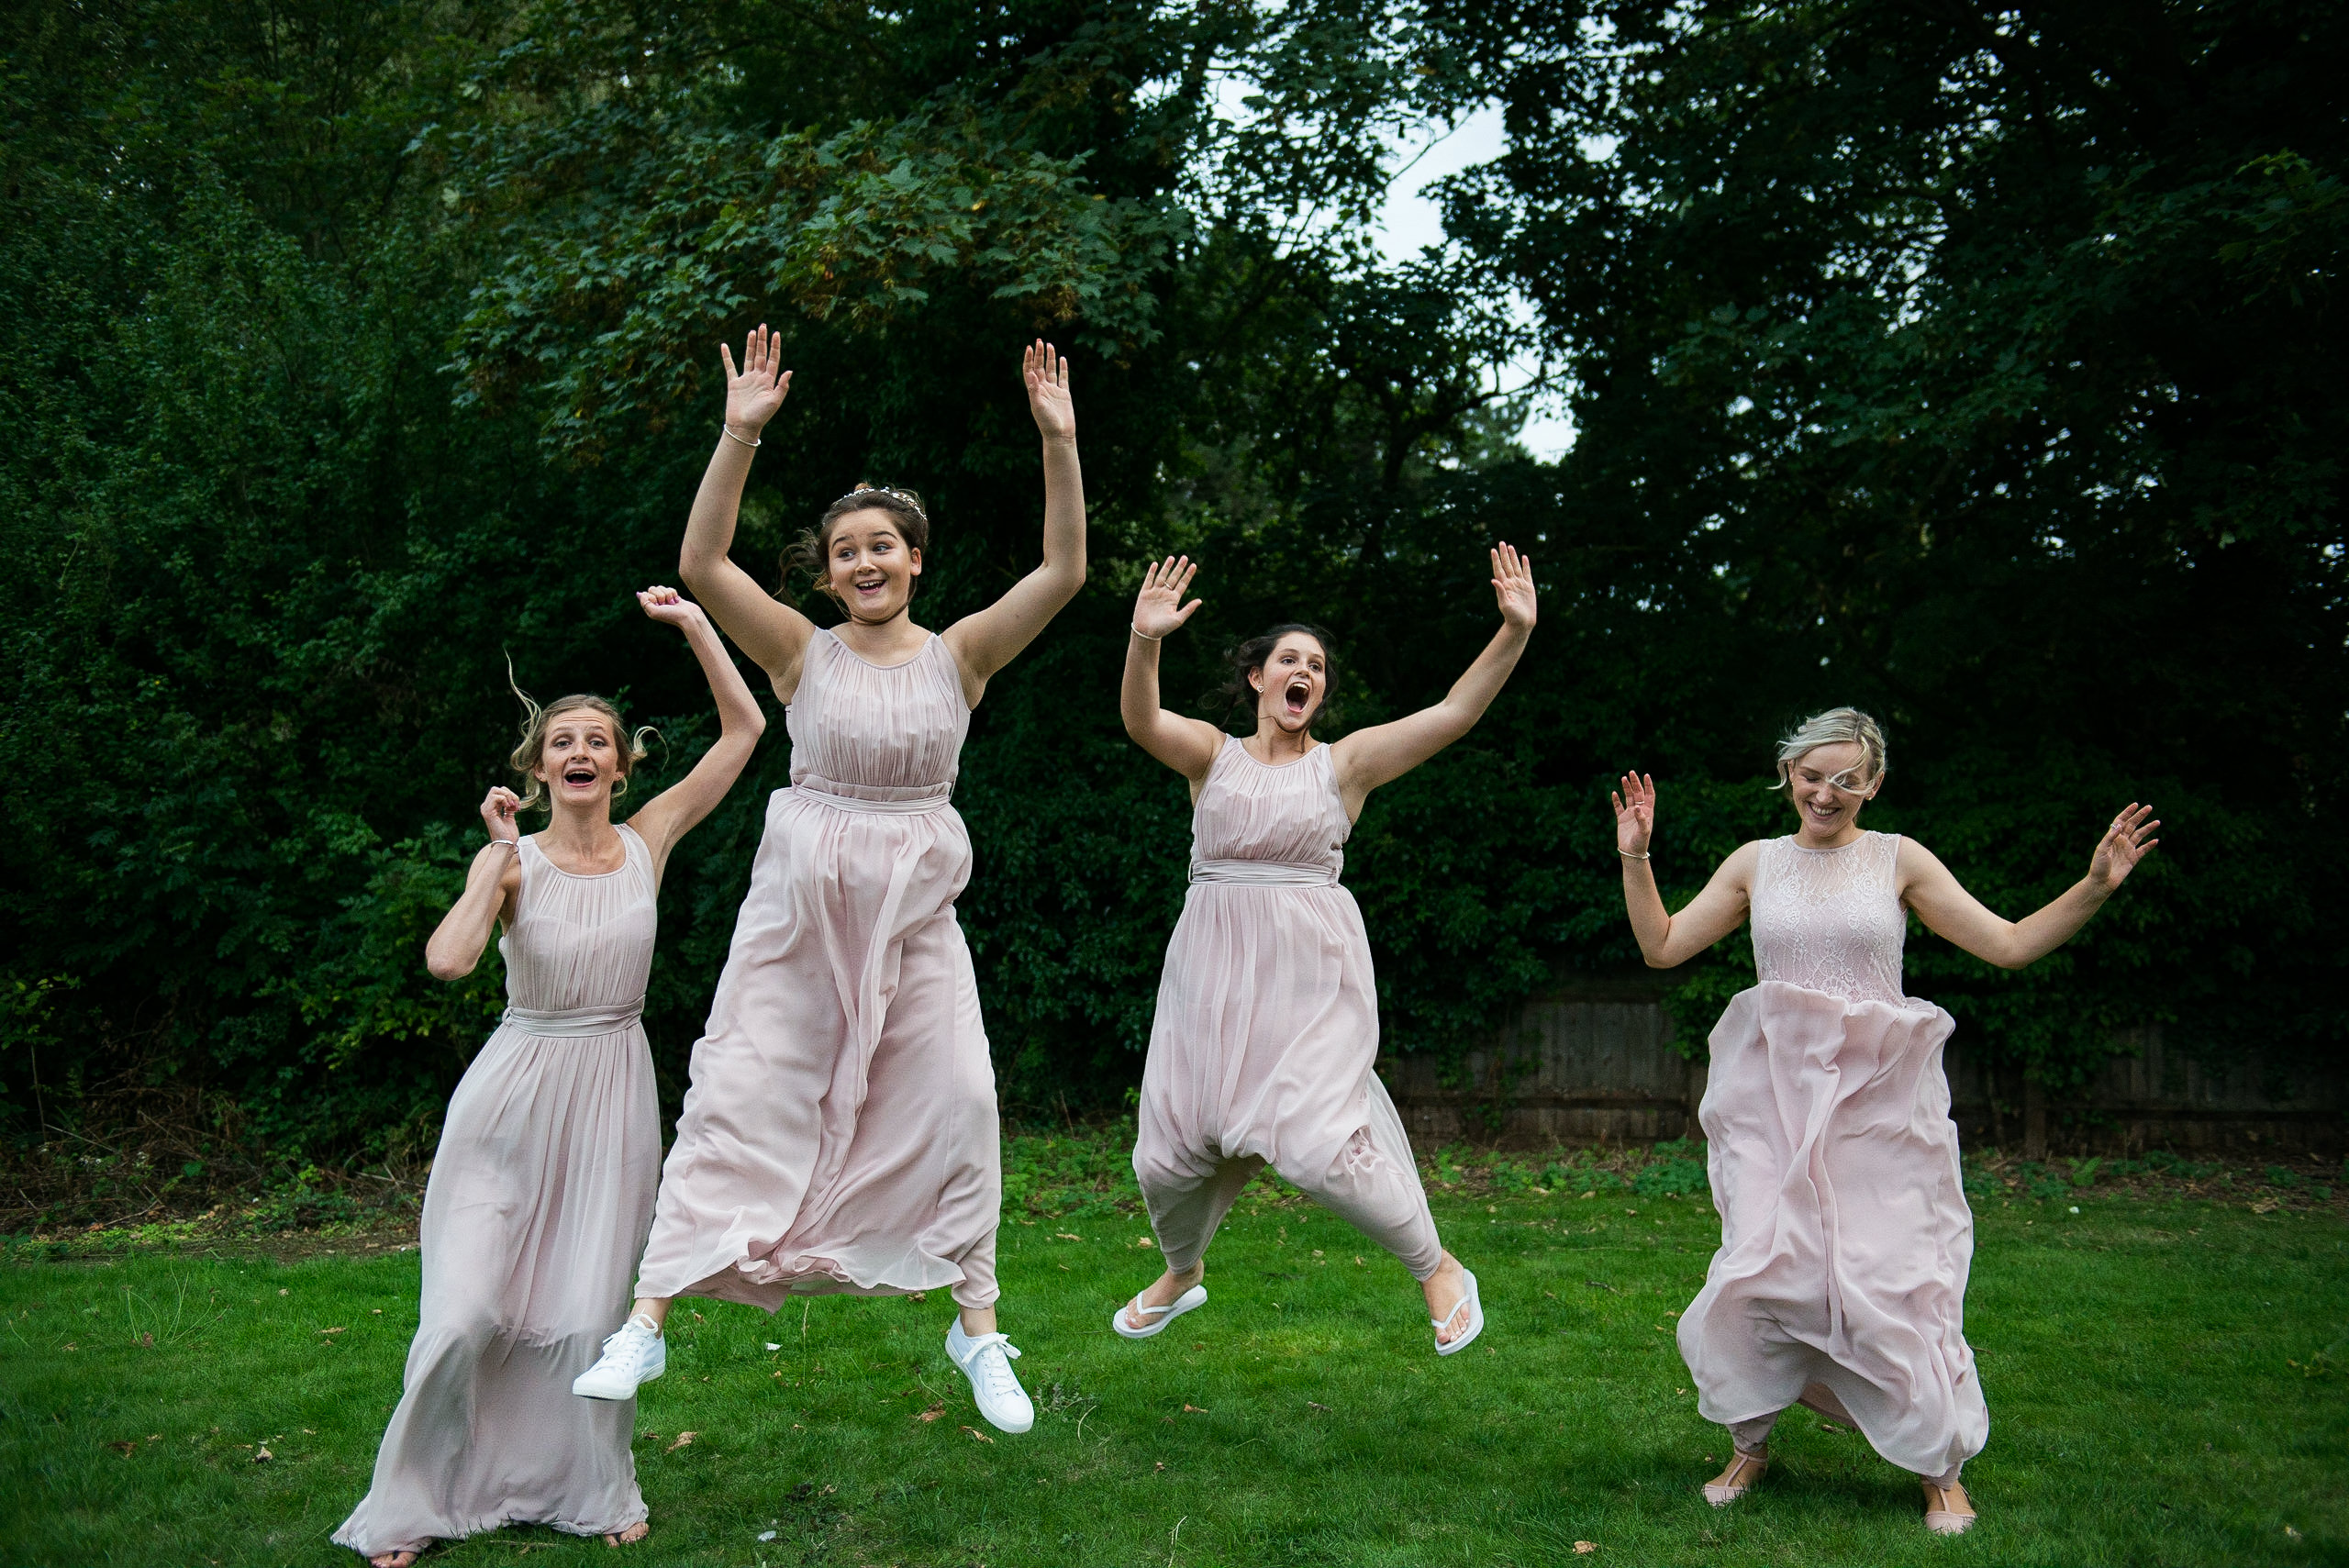 Jumping bridal party